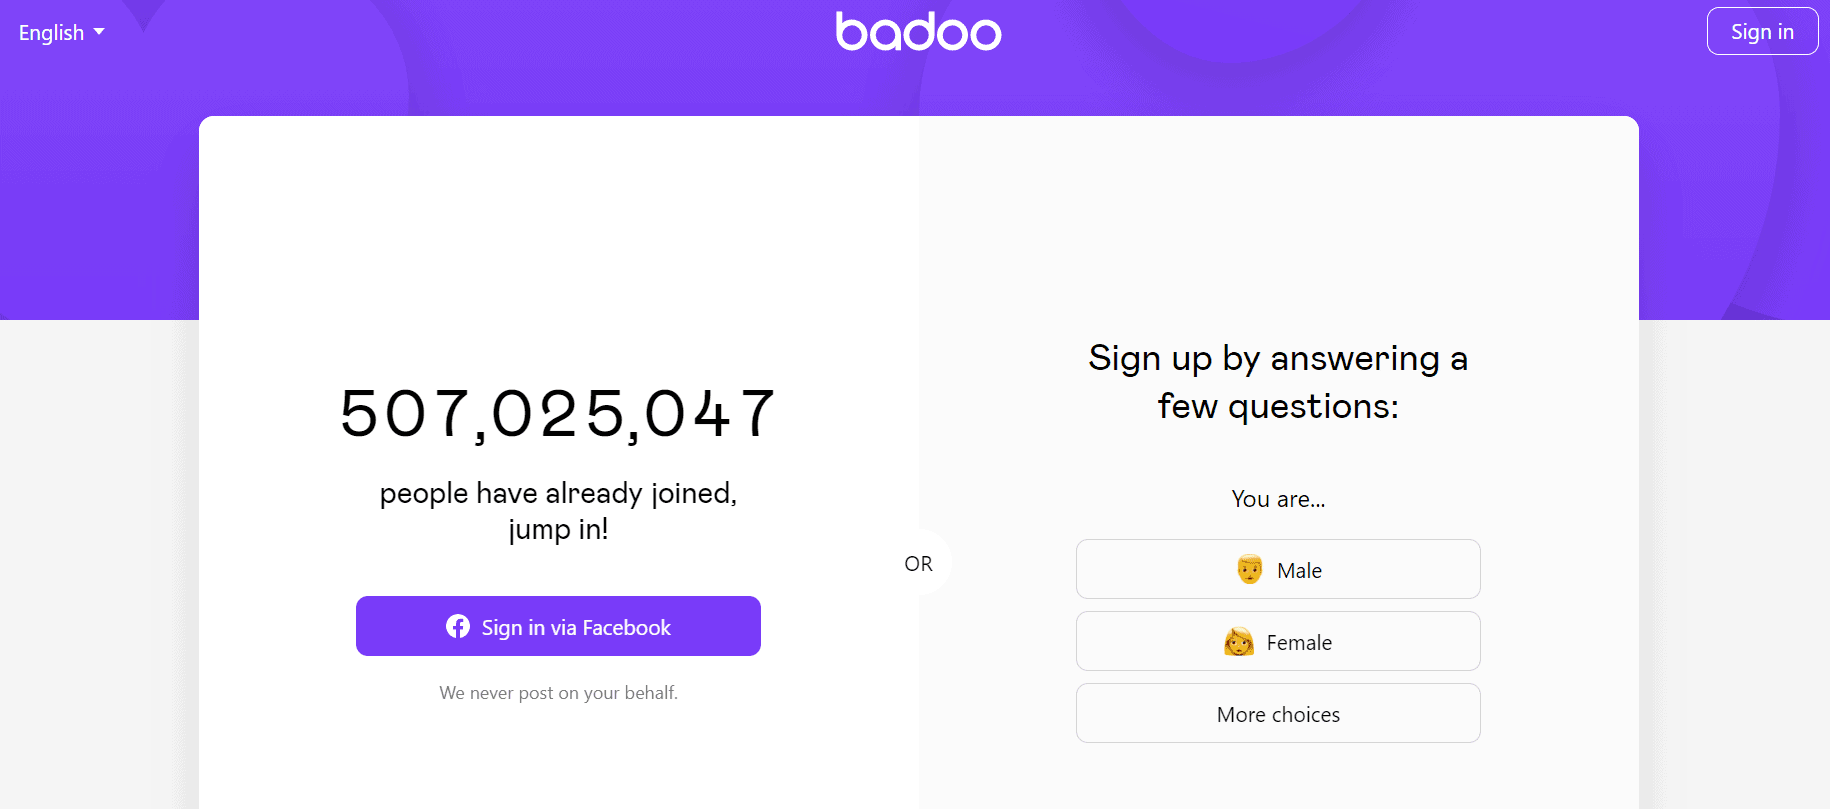 Sajt za upoznavanje badoo login